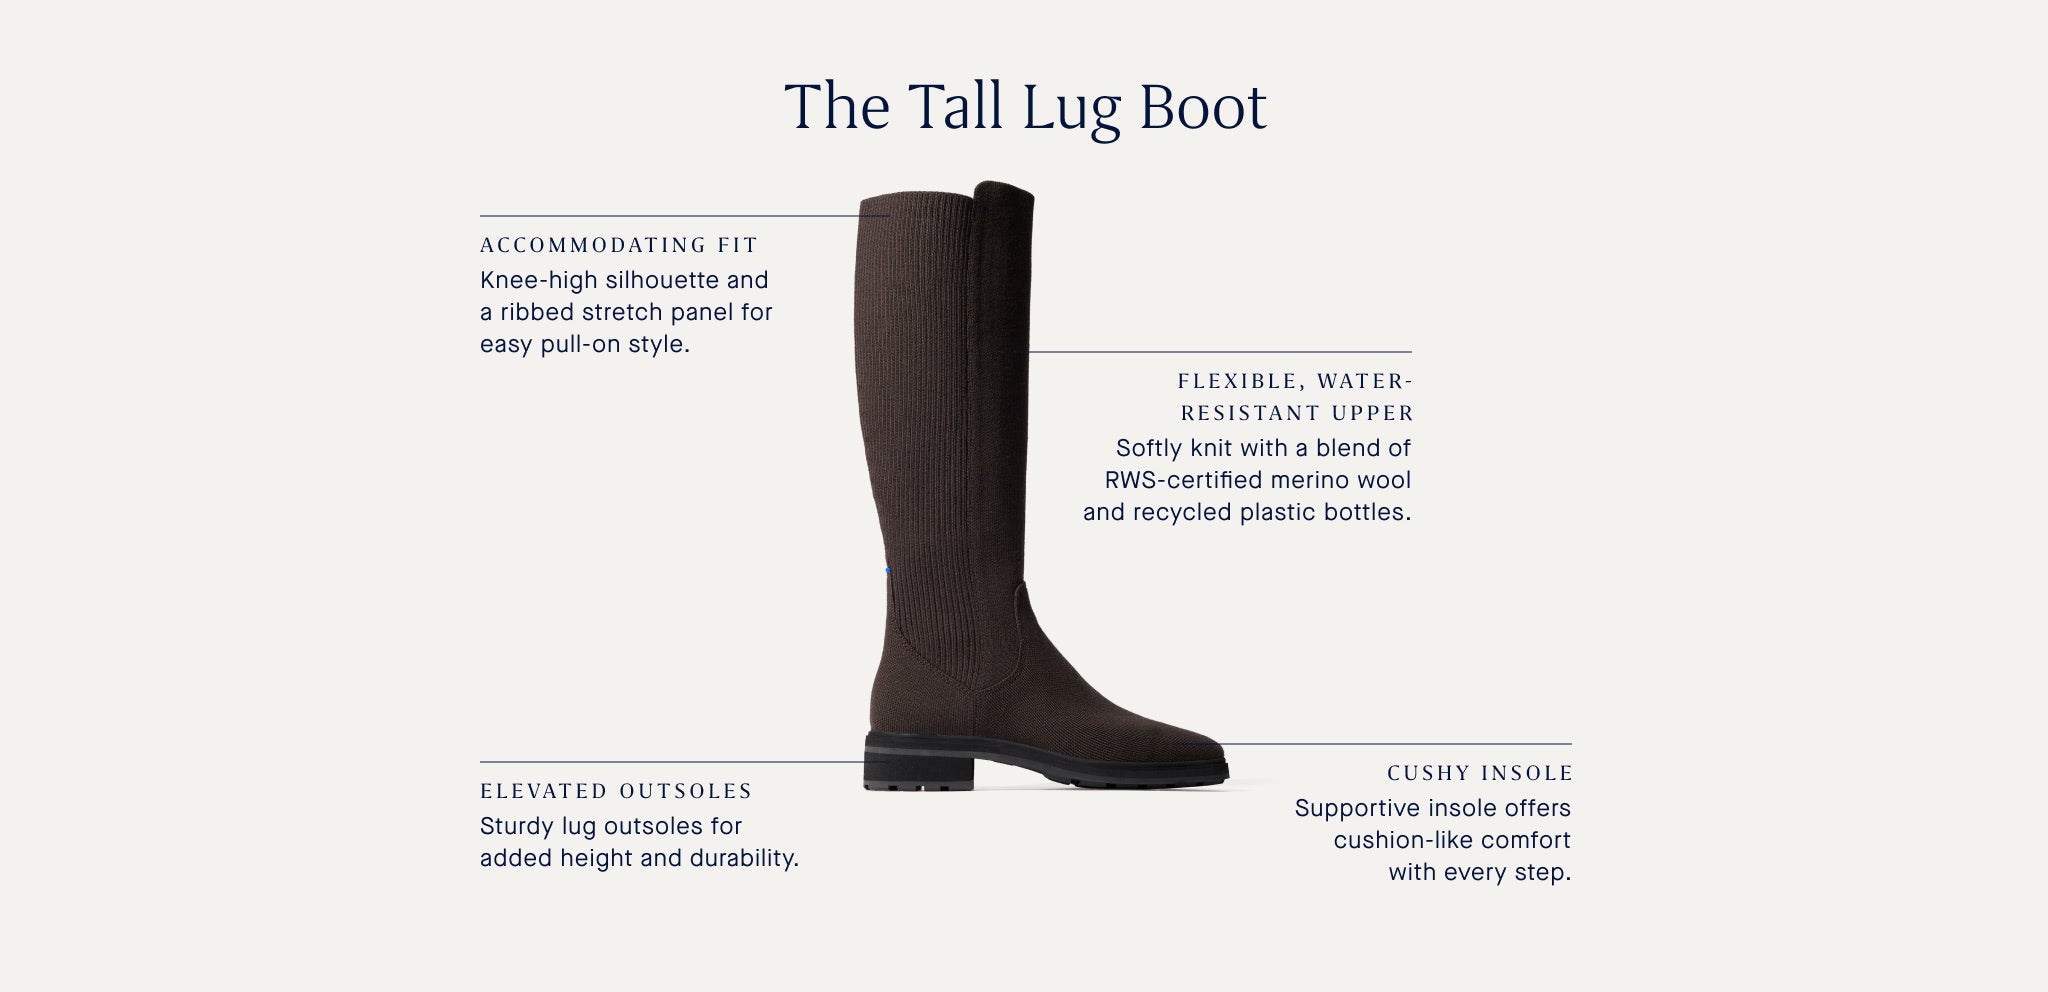 The Tall Lug Boot